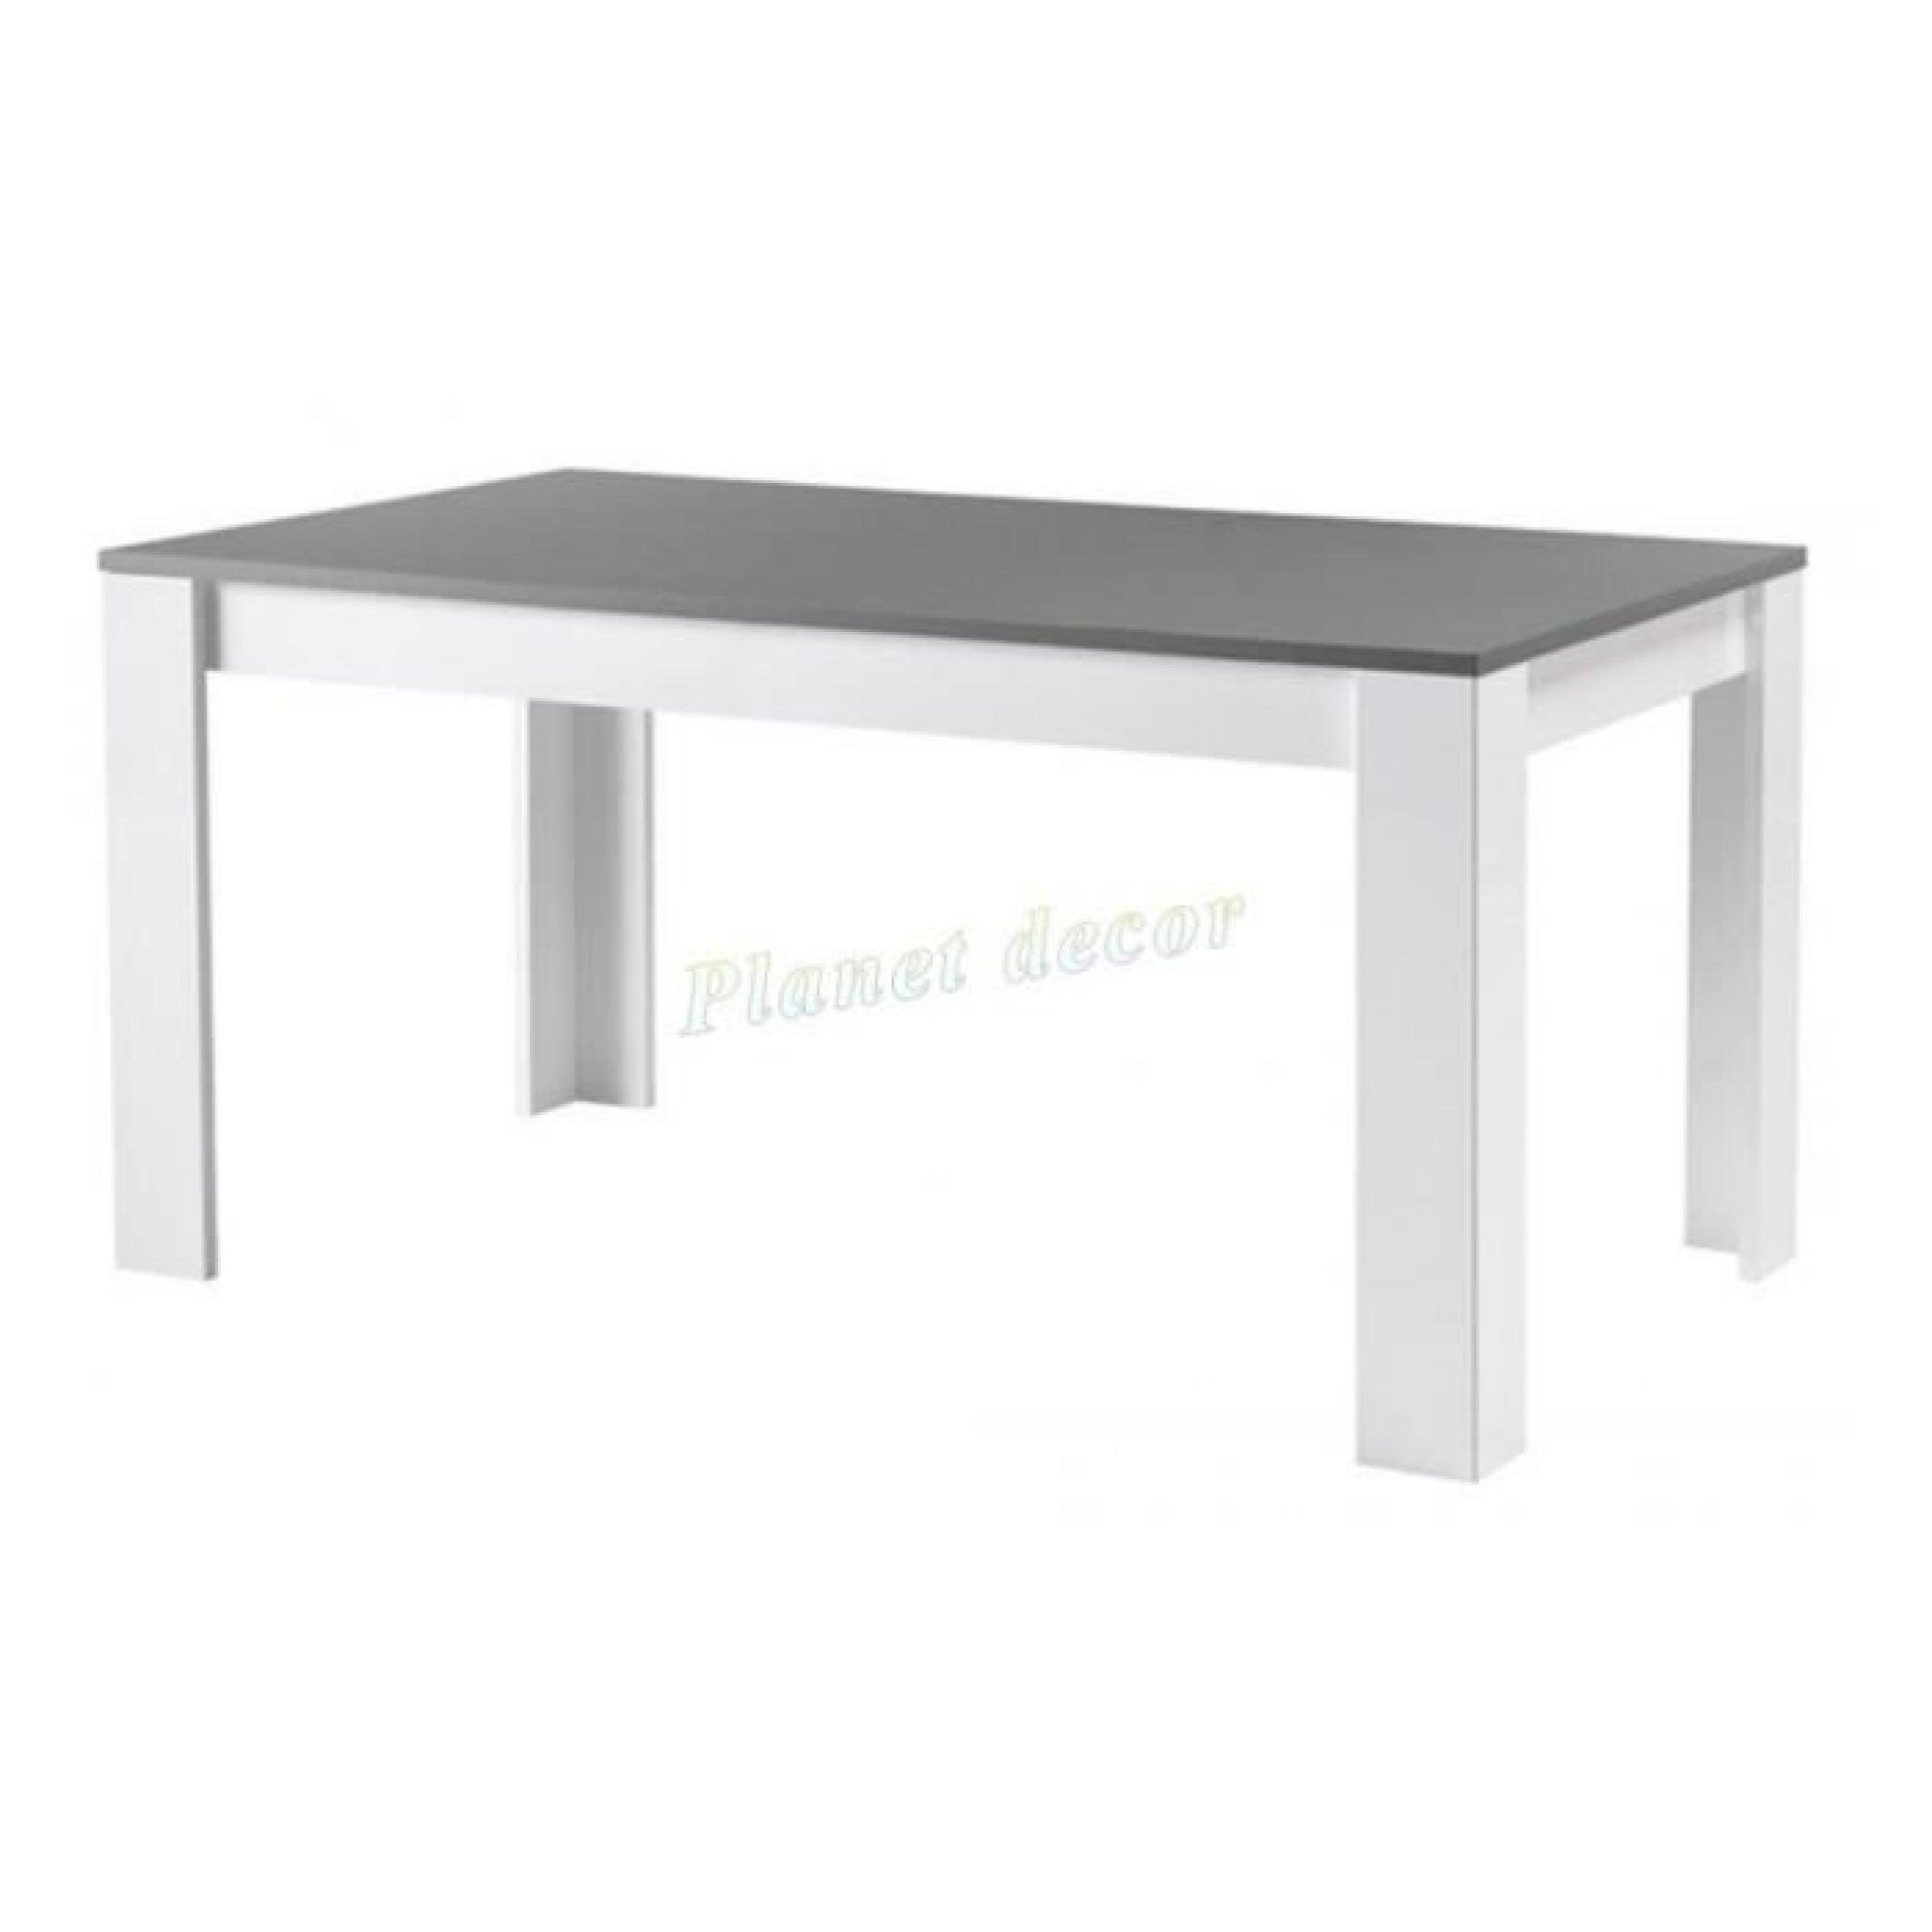 TABLE DE REPAS MODENA LAQUEE BLANC-GRIS L160 cm